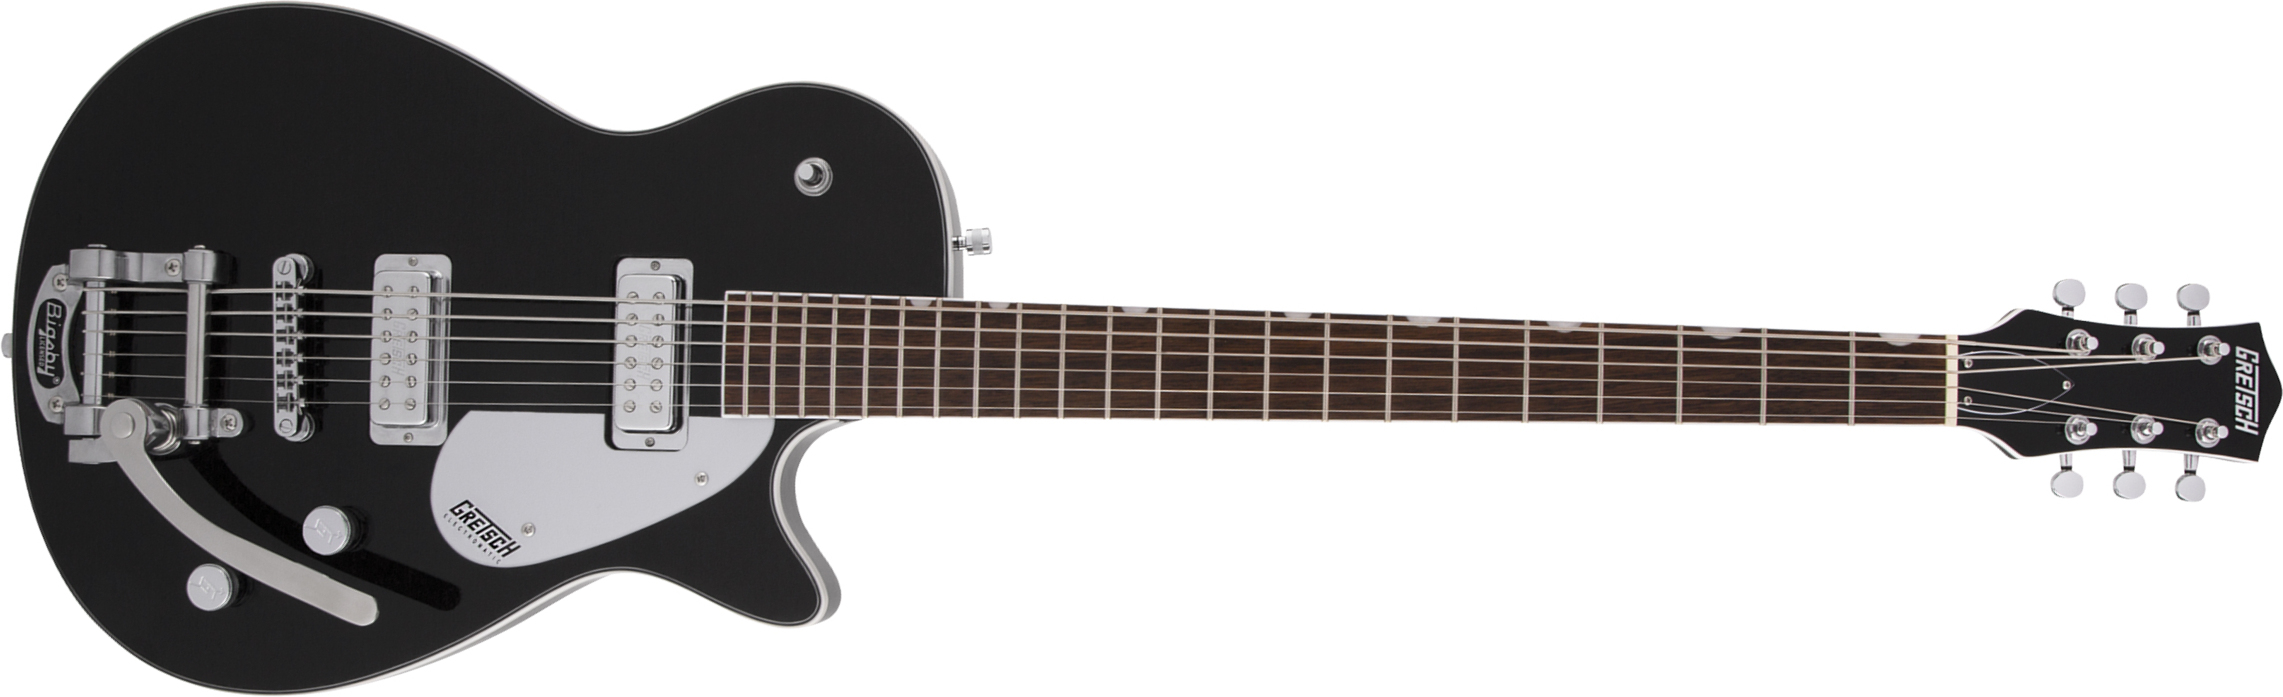 Gretsch G5260t Electromatic Jet Baritone Bigsby Hh Trem Lau - Black - Baritone guitar - Main picture